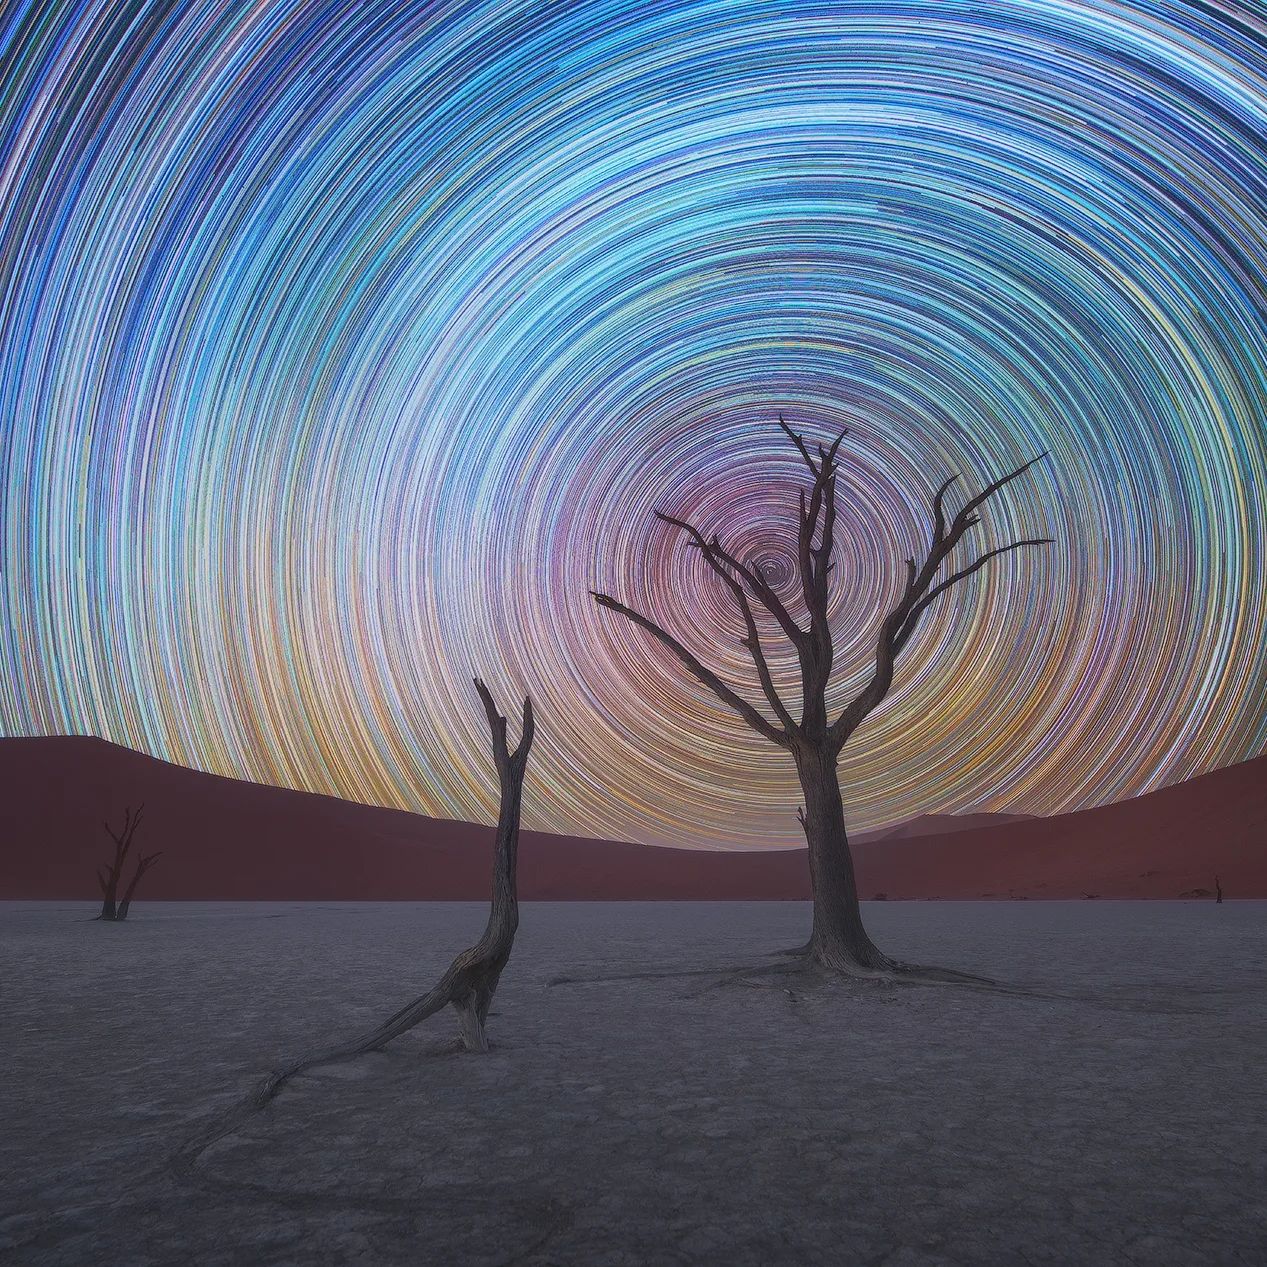  纳米布沙漠的星轨，来自摄影师Daniel Kordan。 